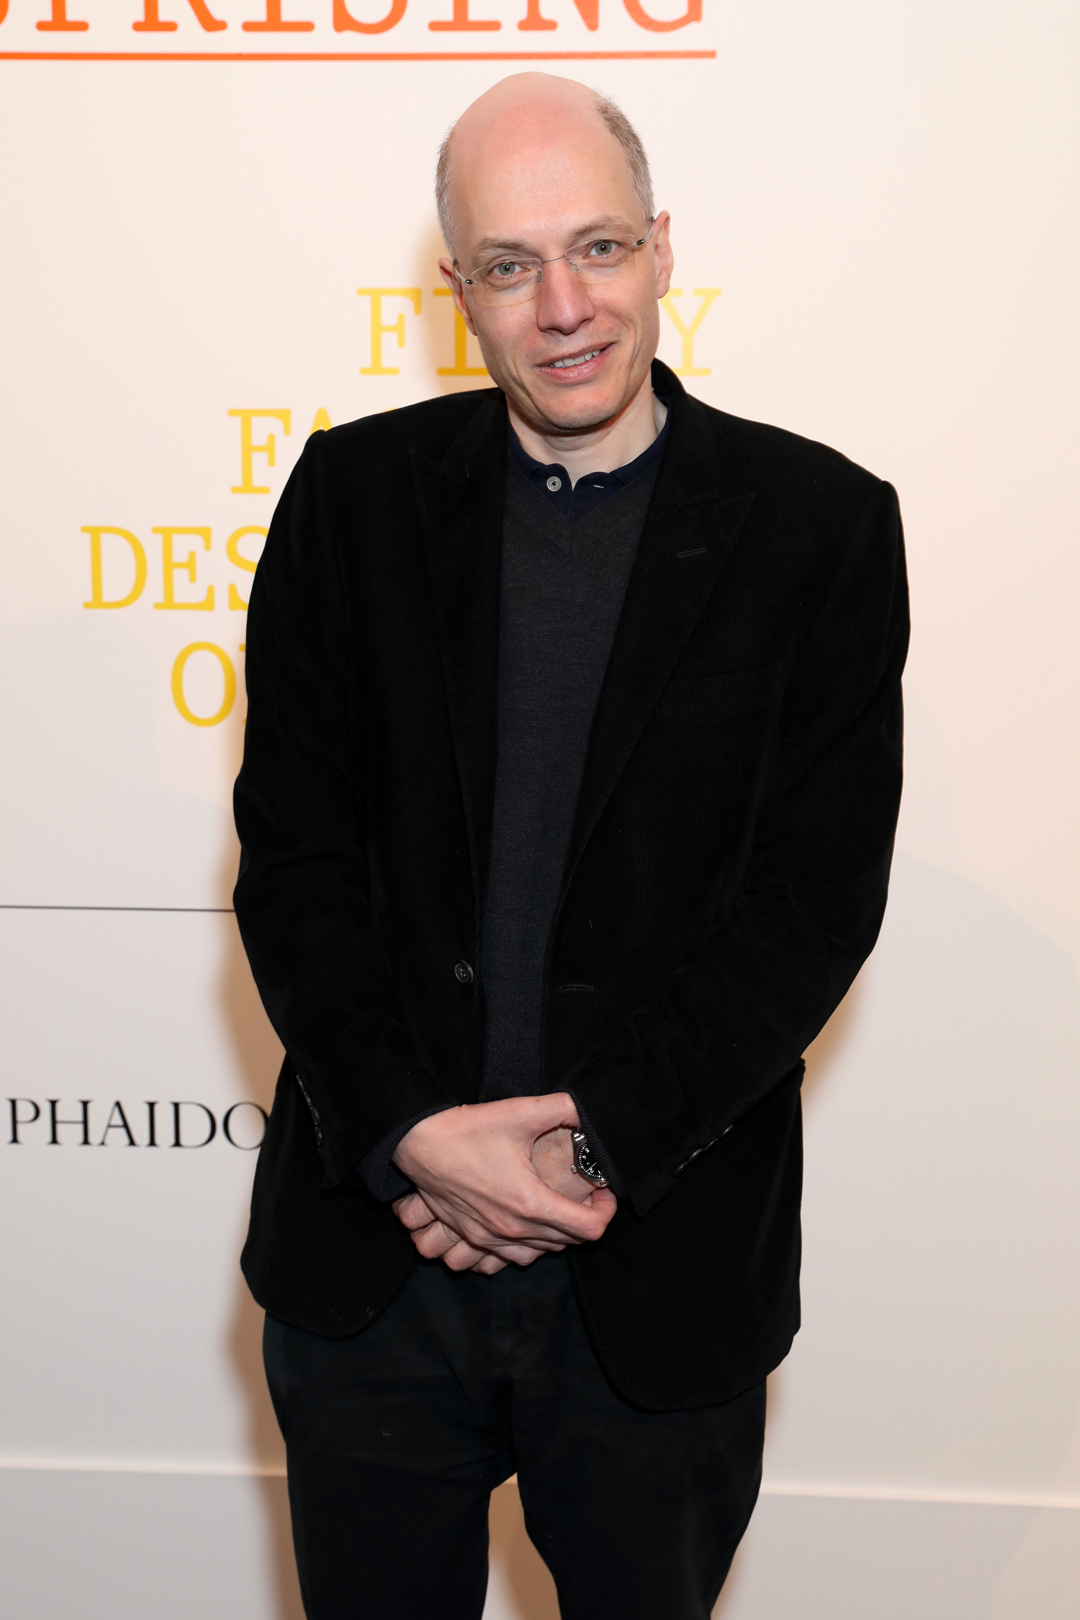 Alain de Botton at Sotheby's last night